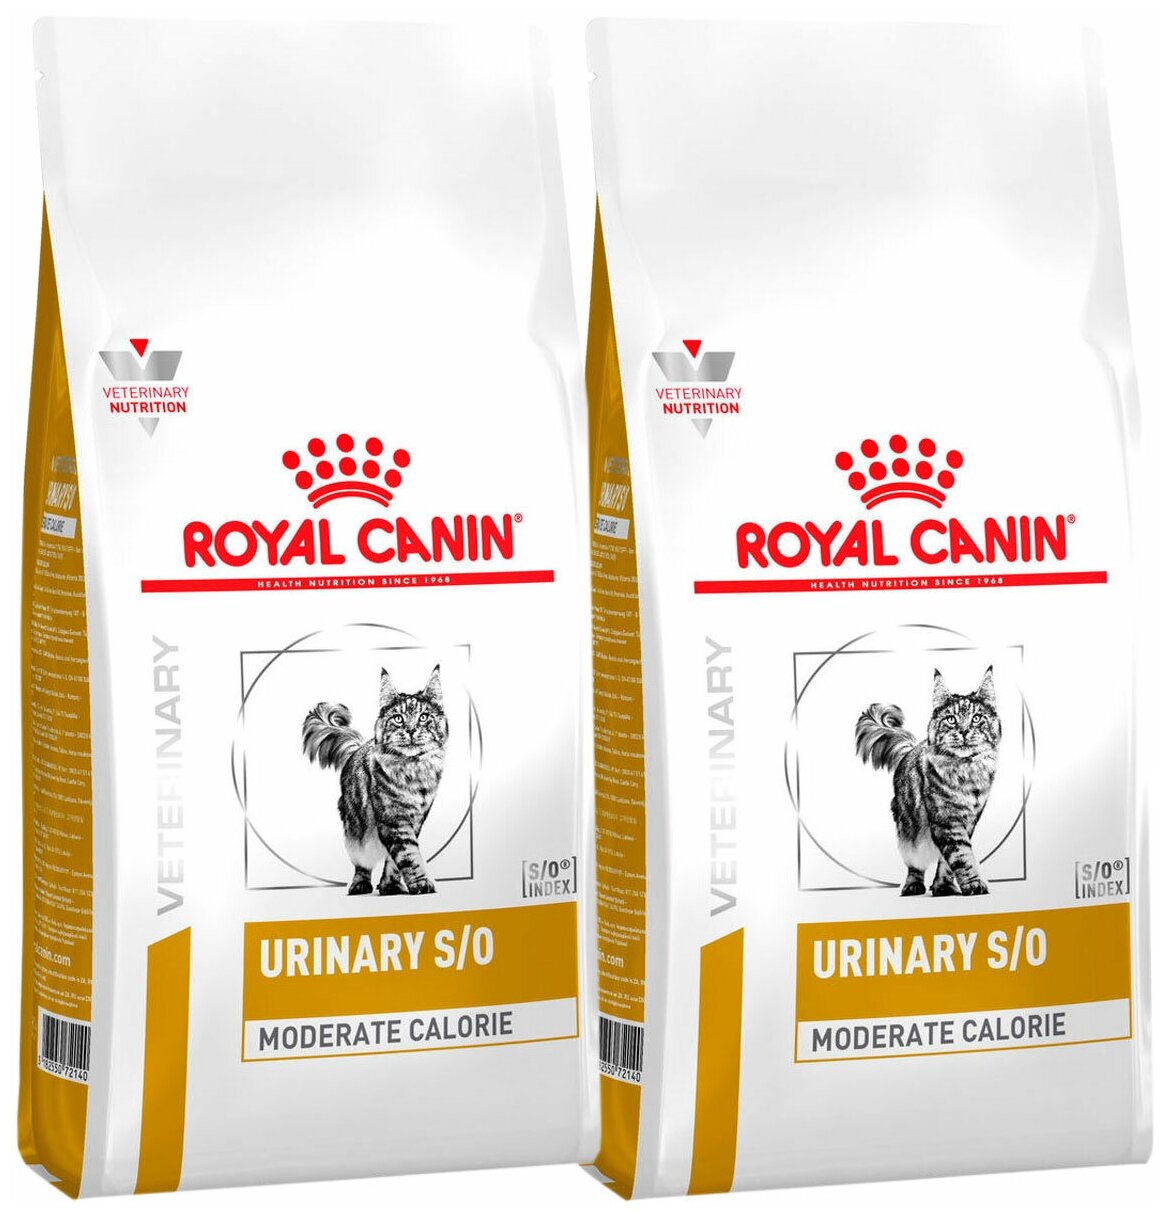 ROYAL CANIN URINARY S/O MODERATE CALORIE для взрослых кошек при мочекаменной болезни с умеренным содержанием энергии (1,5 + 1,5 кг)